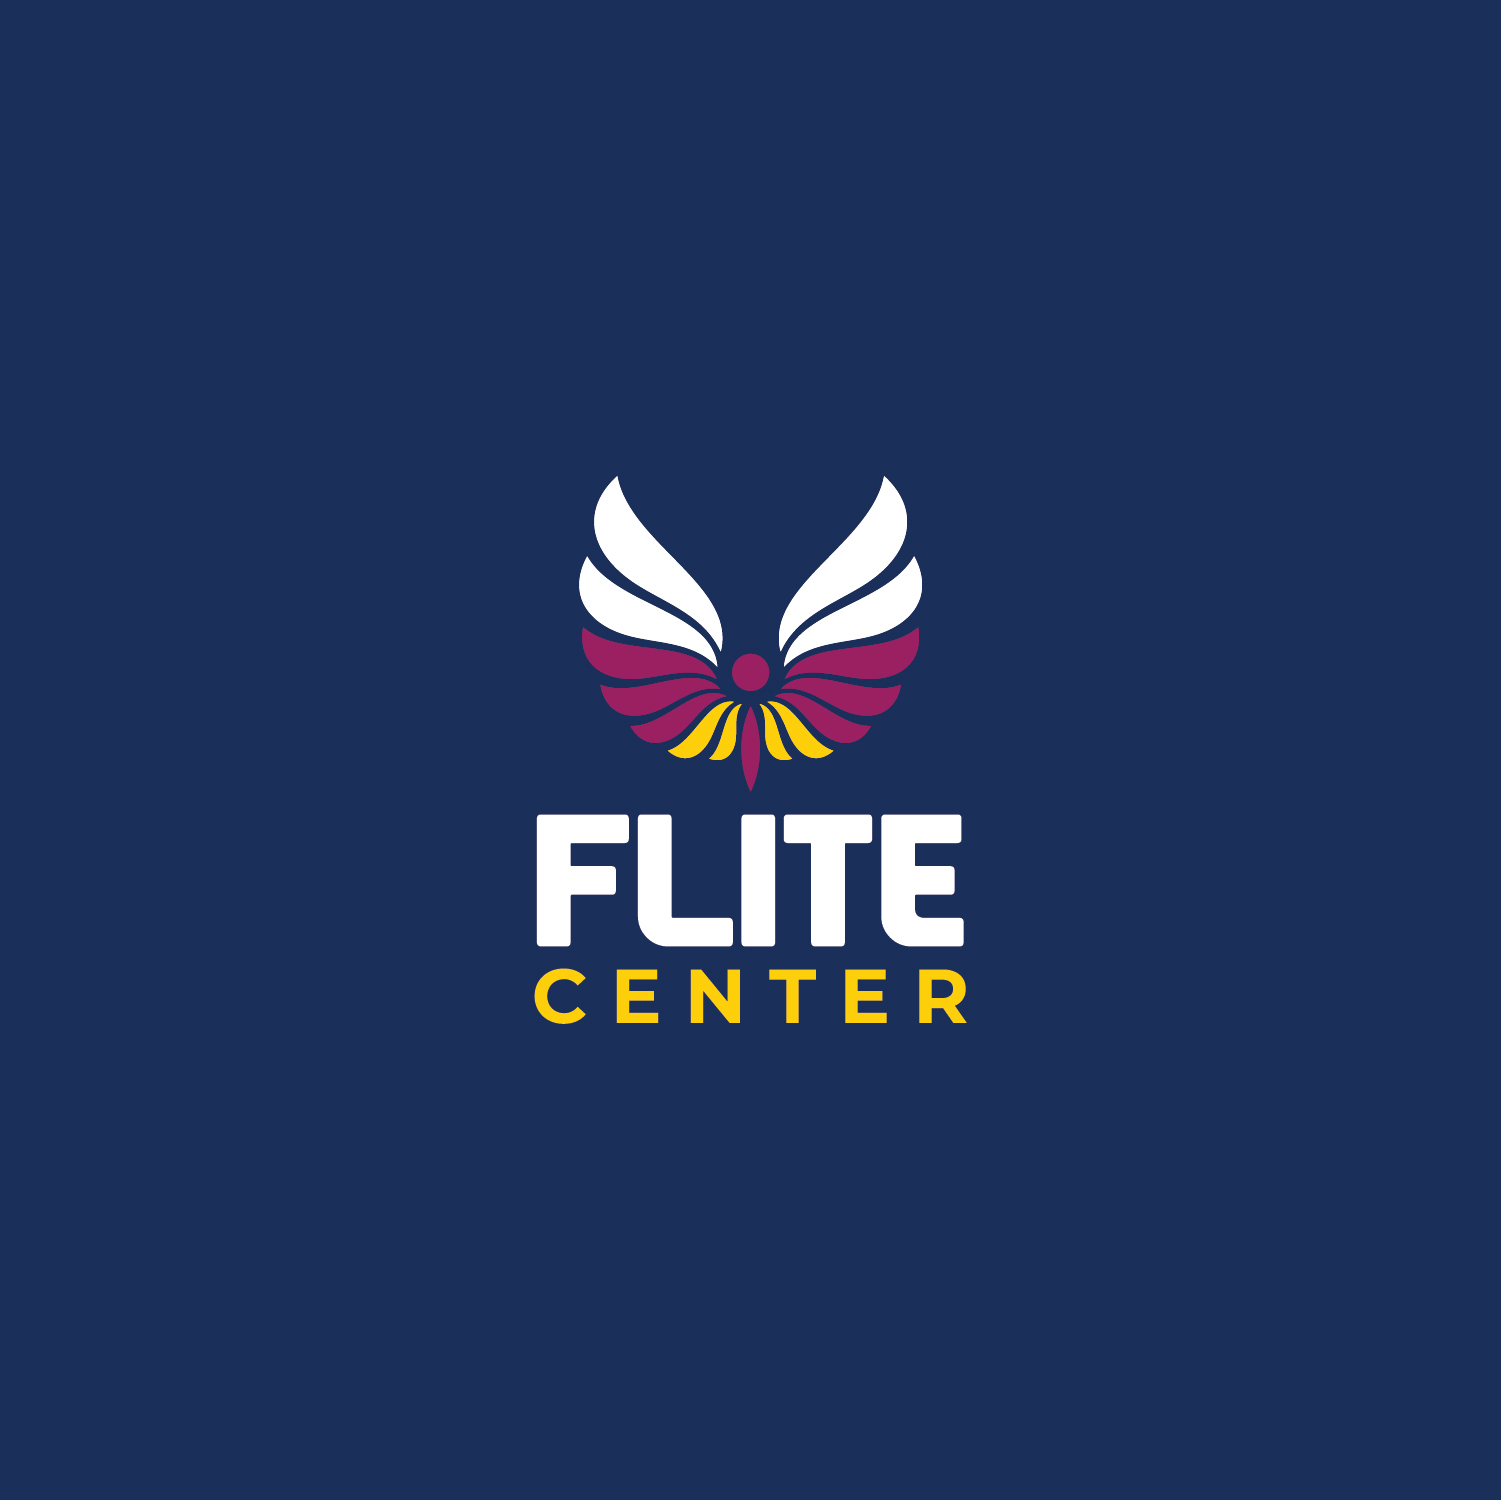 Flite Center